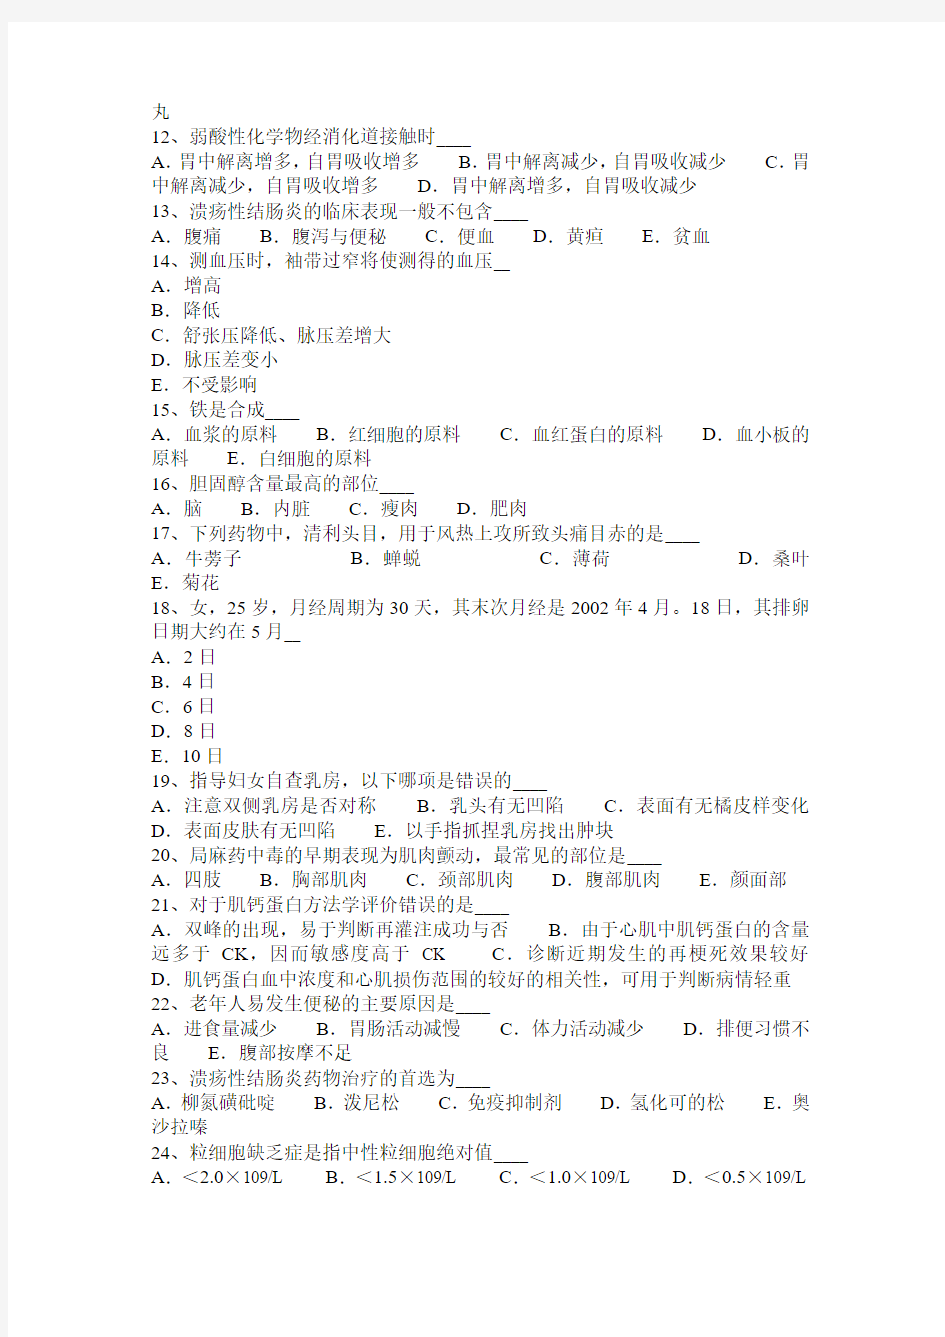 青海省医疗卫生系统事业单位招聘考试试题